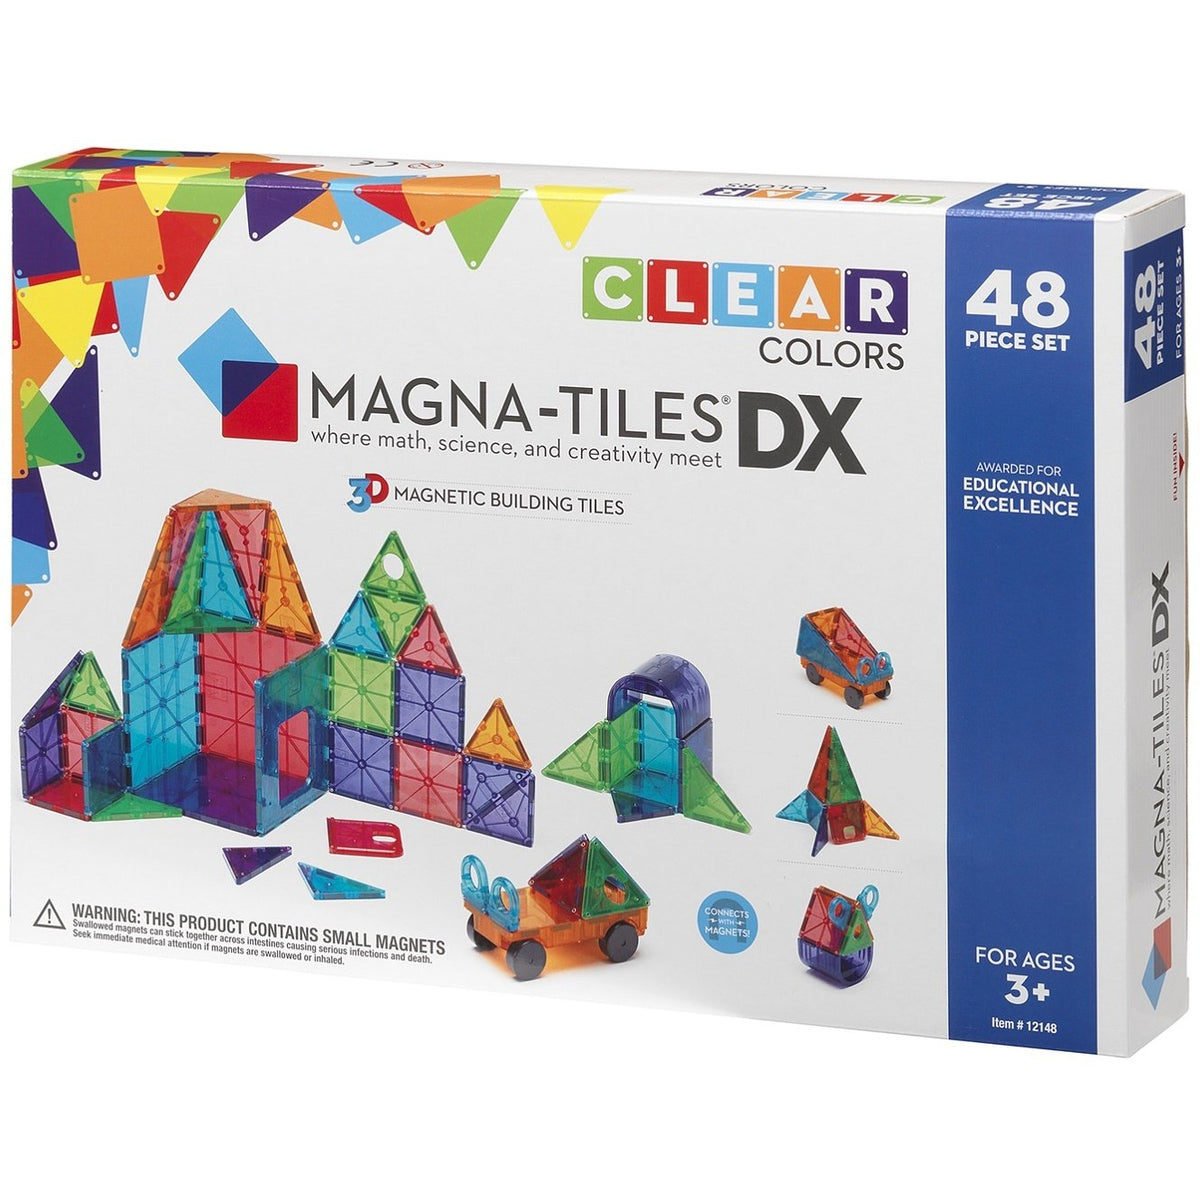 Magna-Tiles Clear Colors DX 48 pc